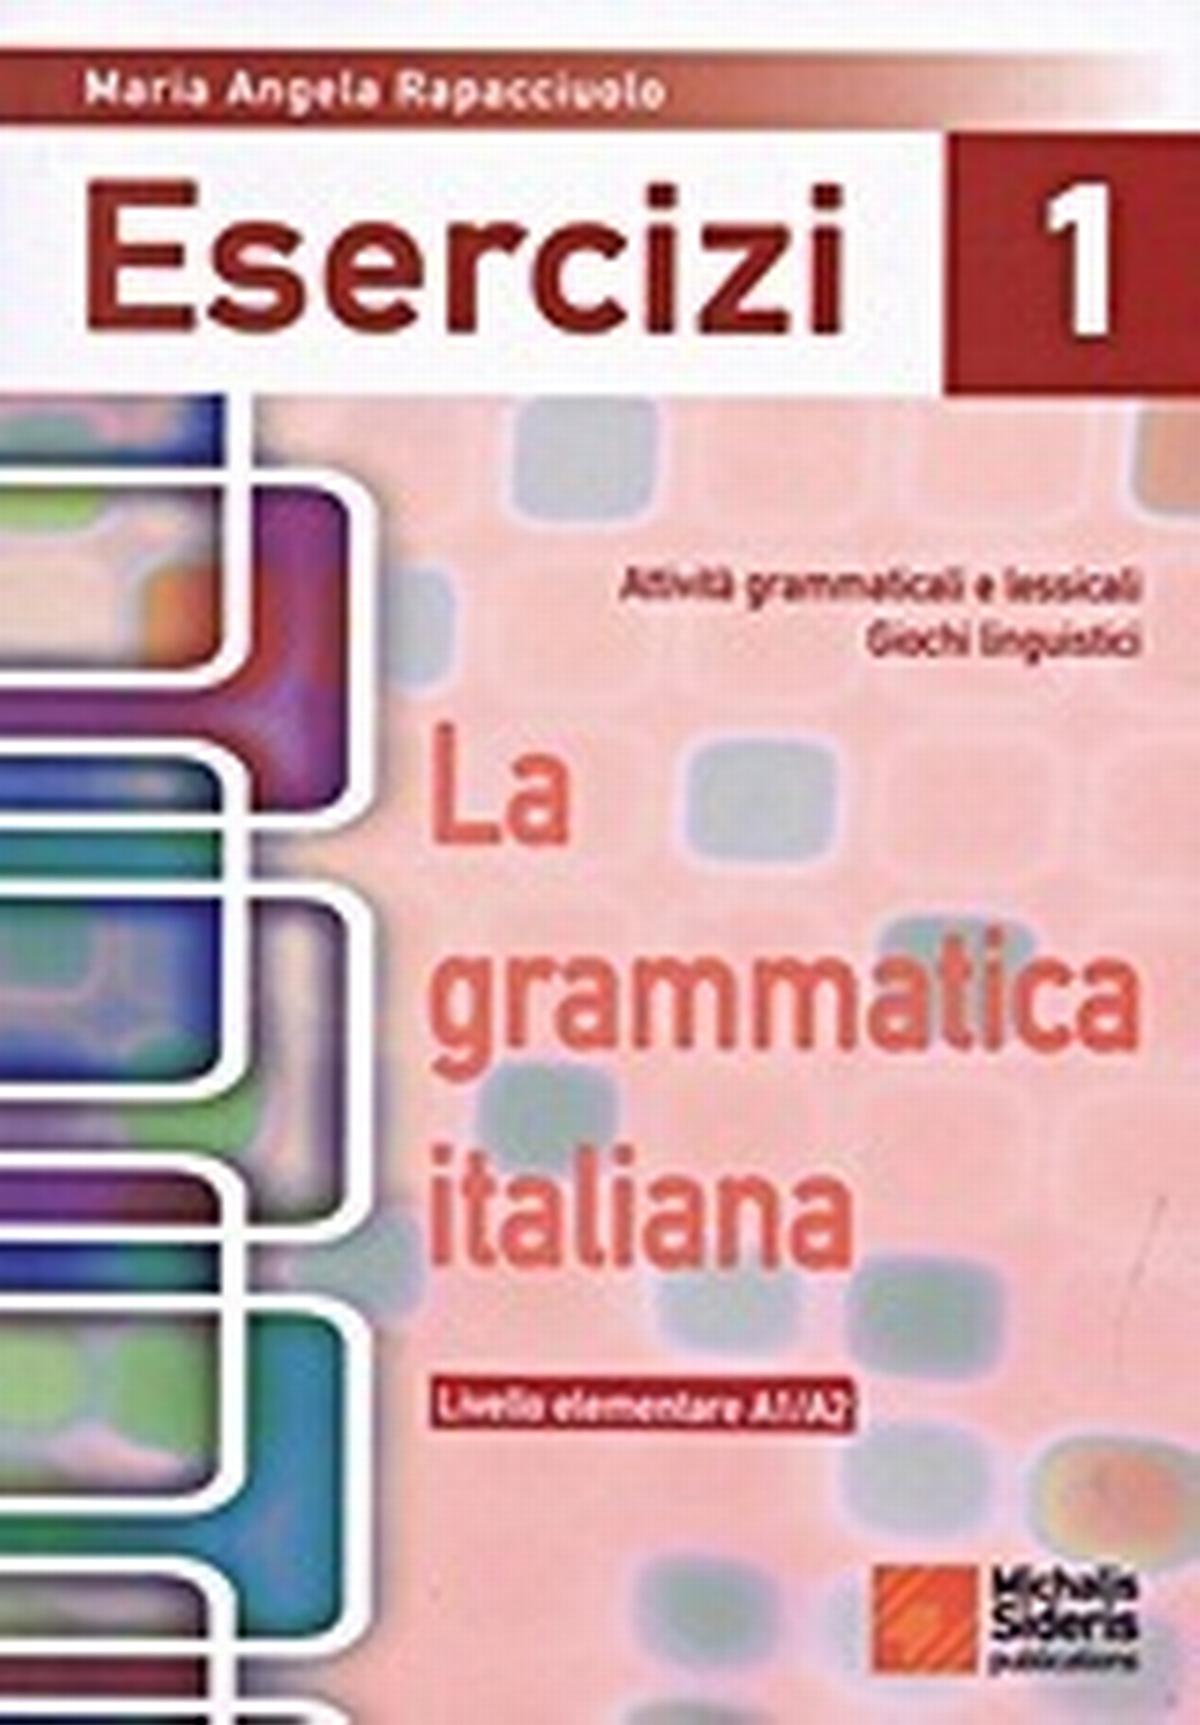 La grammatica Italiana Esercizi 1